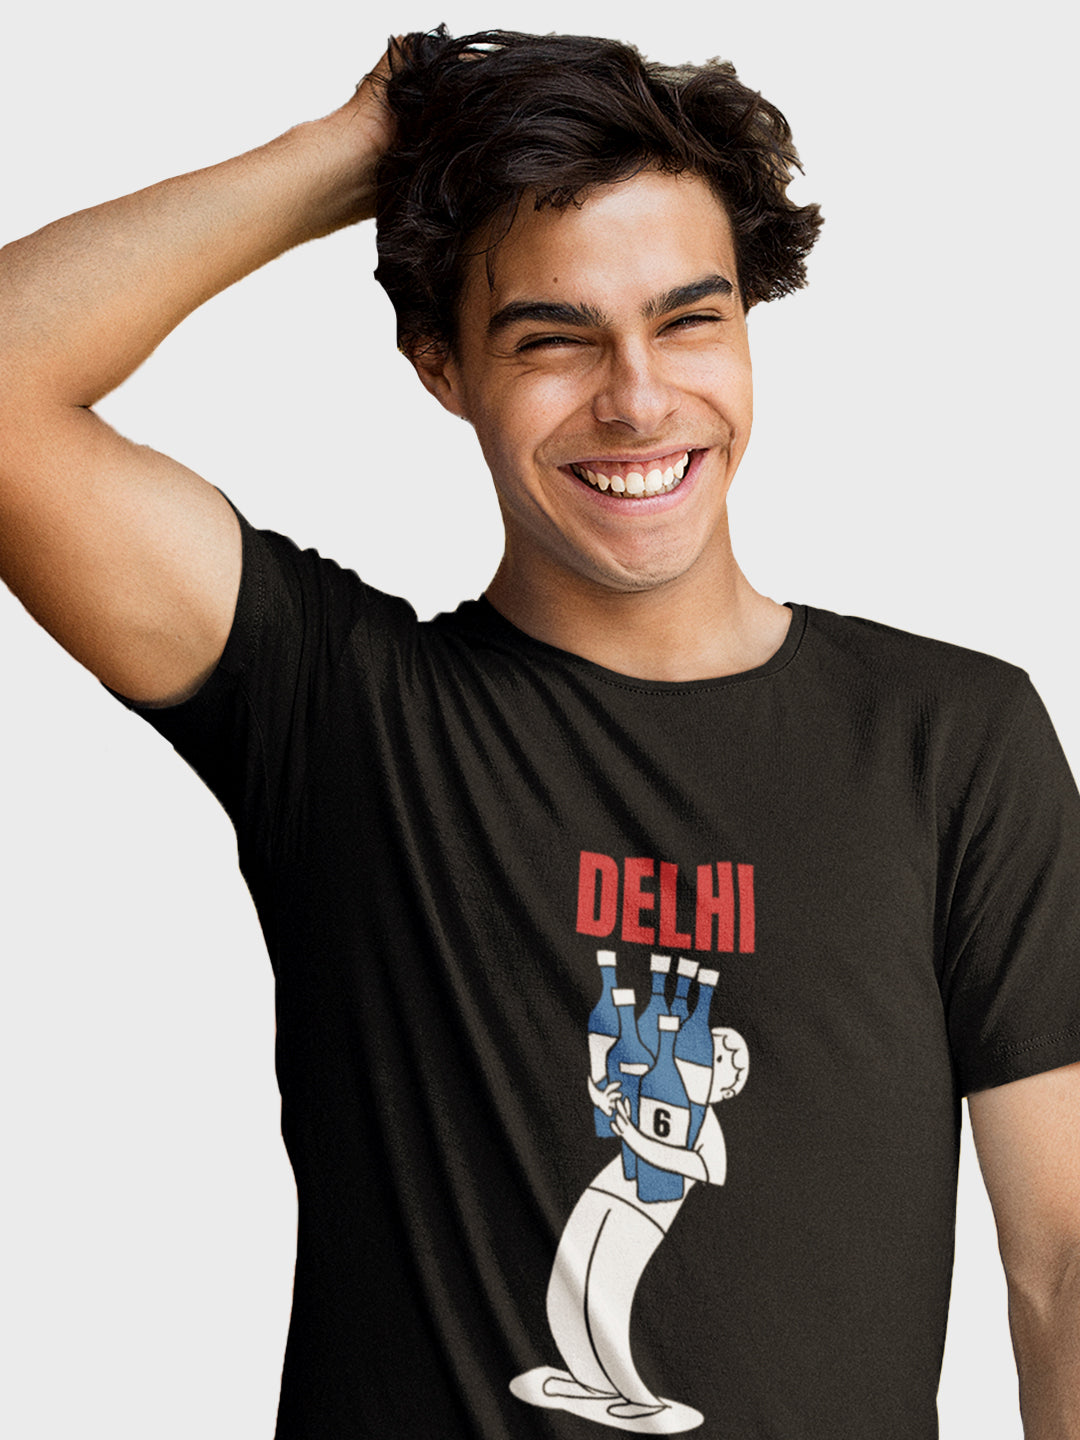 Delhi's Sixer T-Shirt